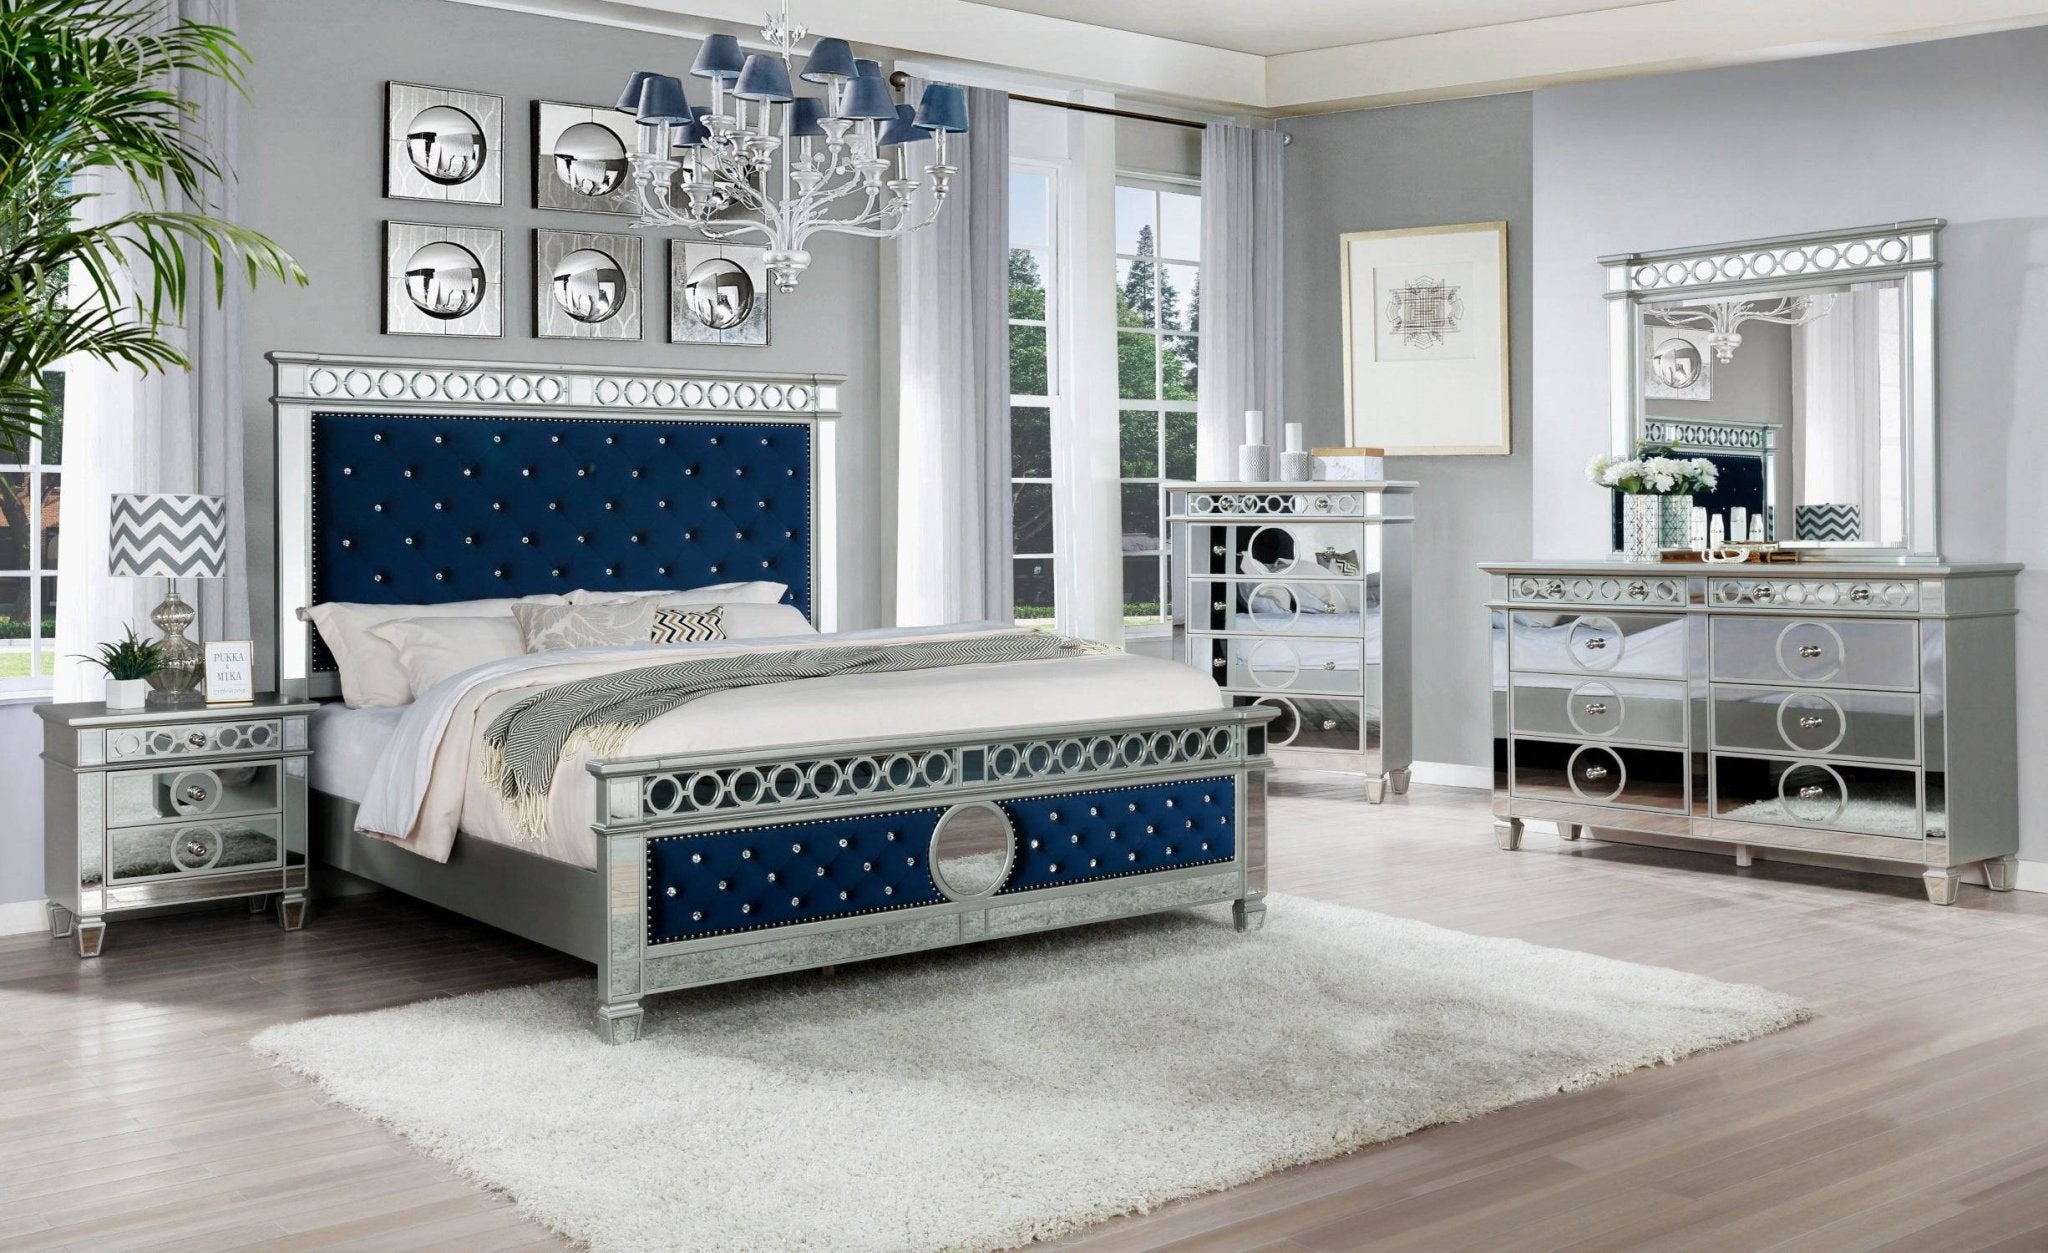 Bedroom Furniture Sets - King & Queen Size Bedroom Sets